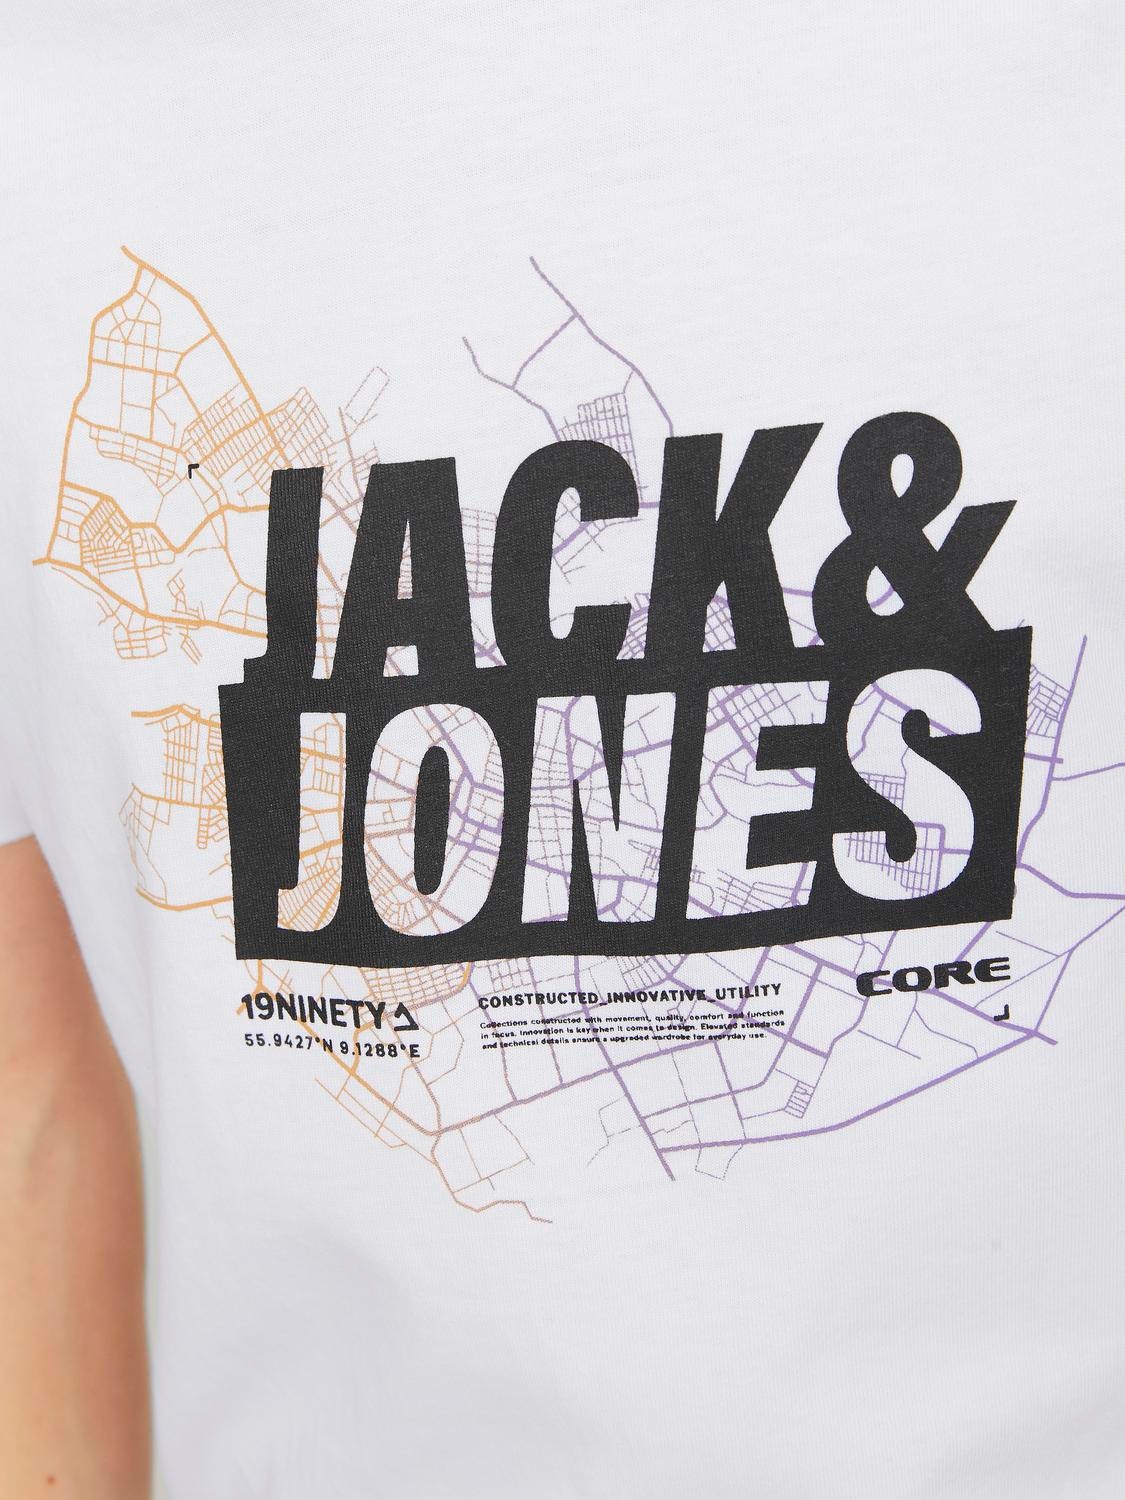 Jack & Jones Tryck T-shirt För pojkar -White - 12254186